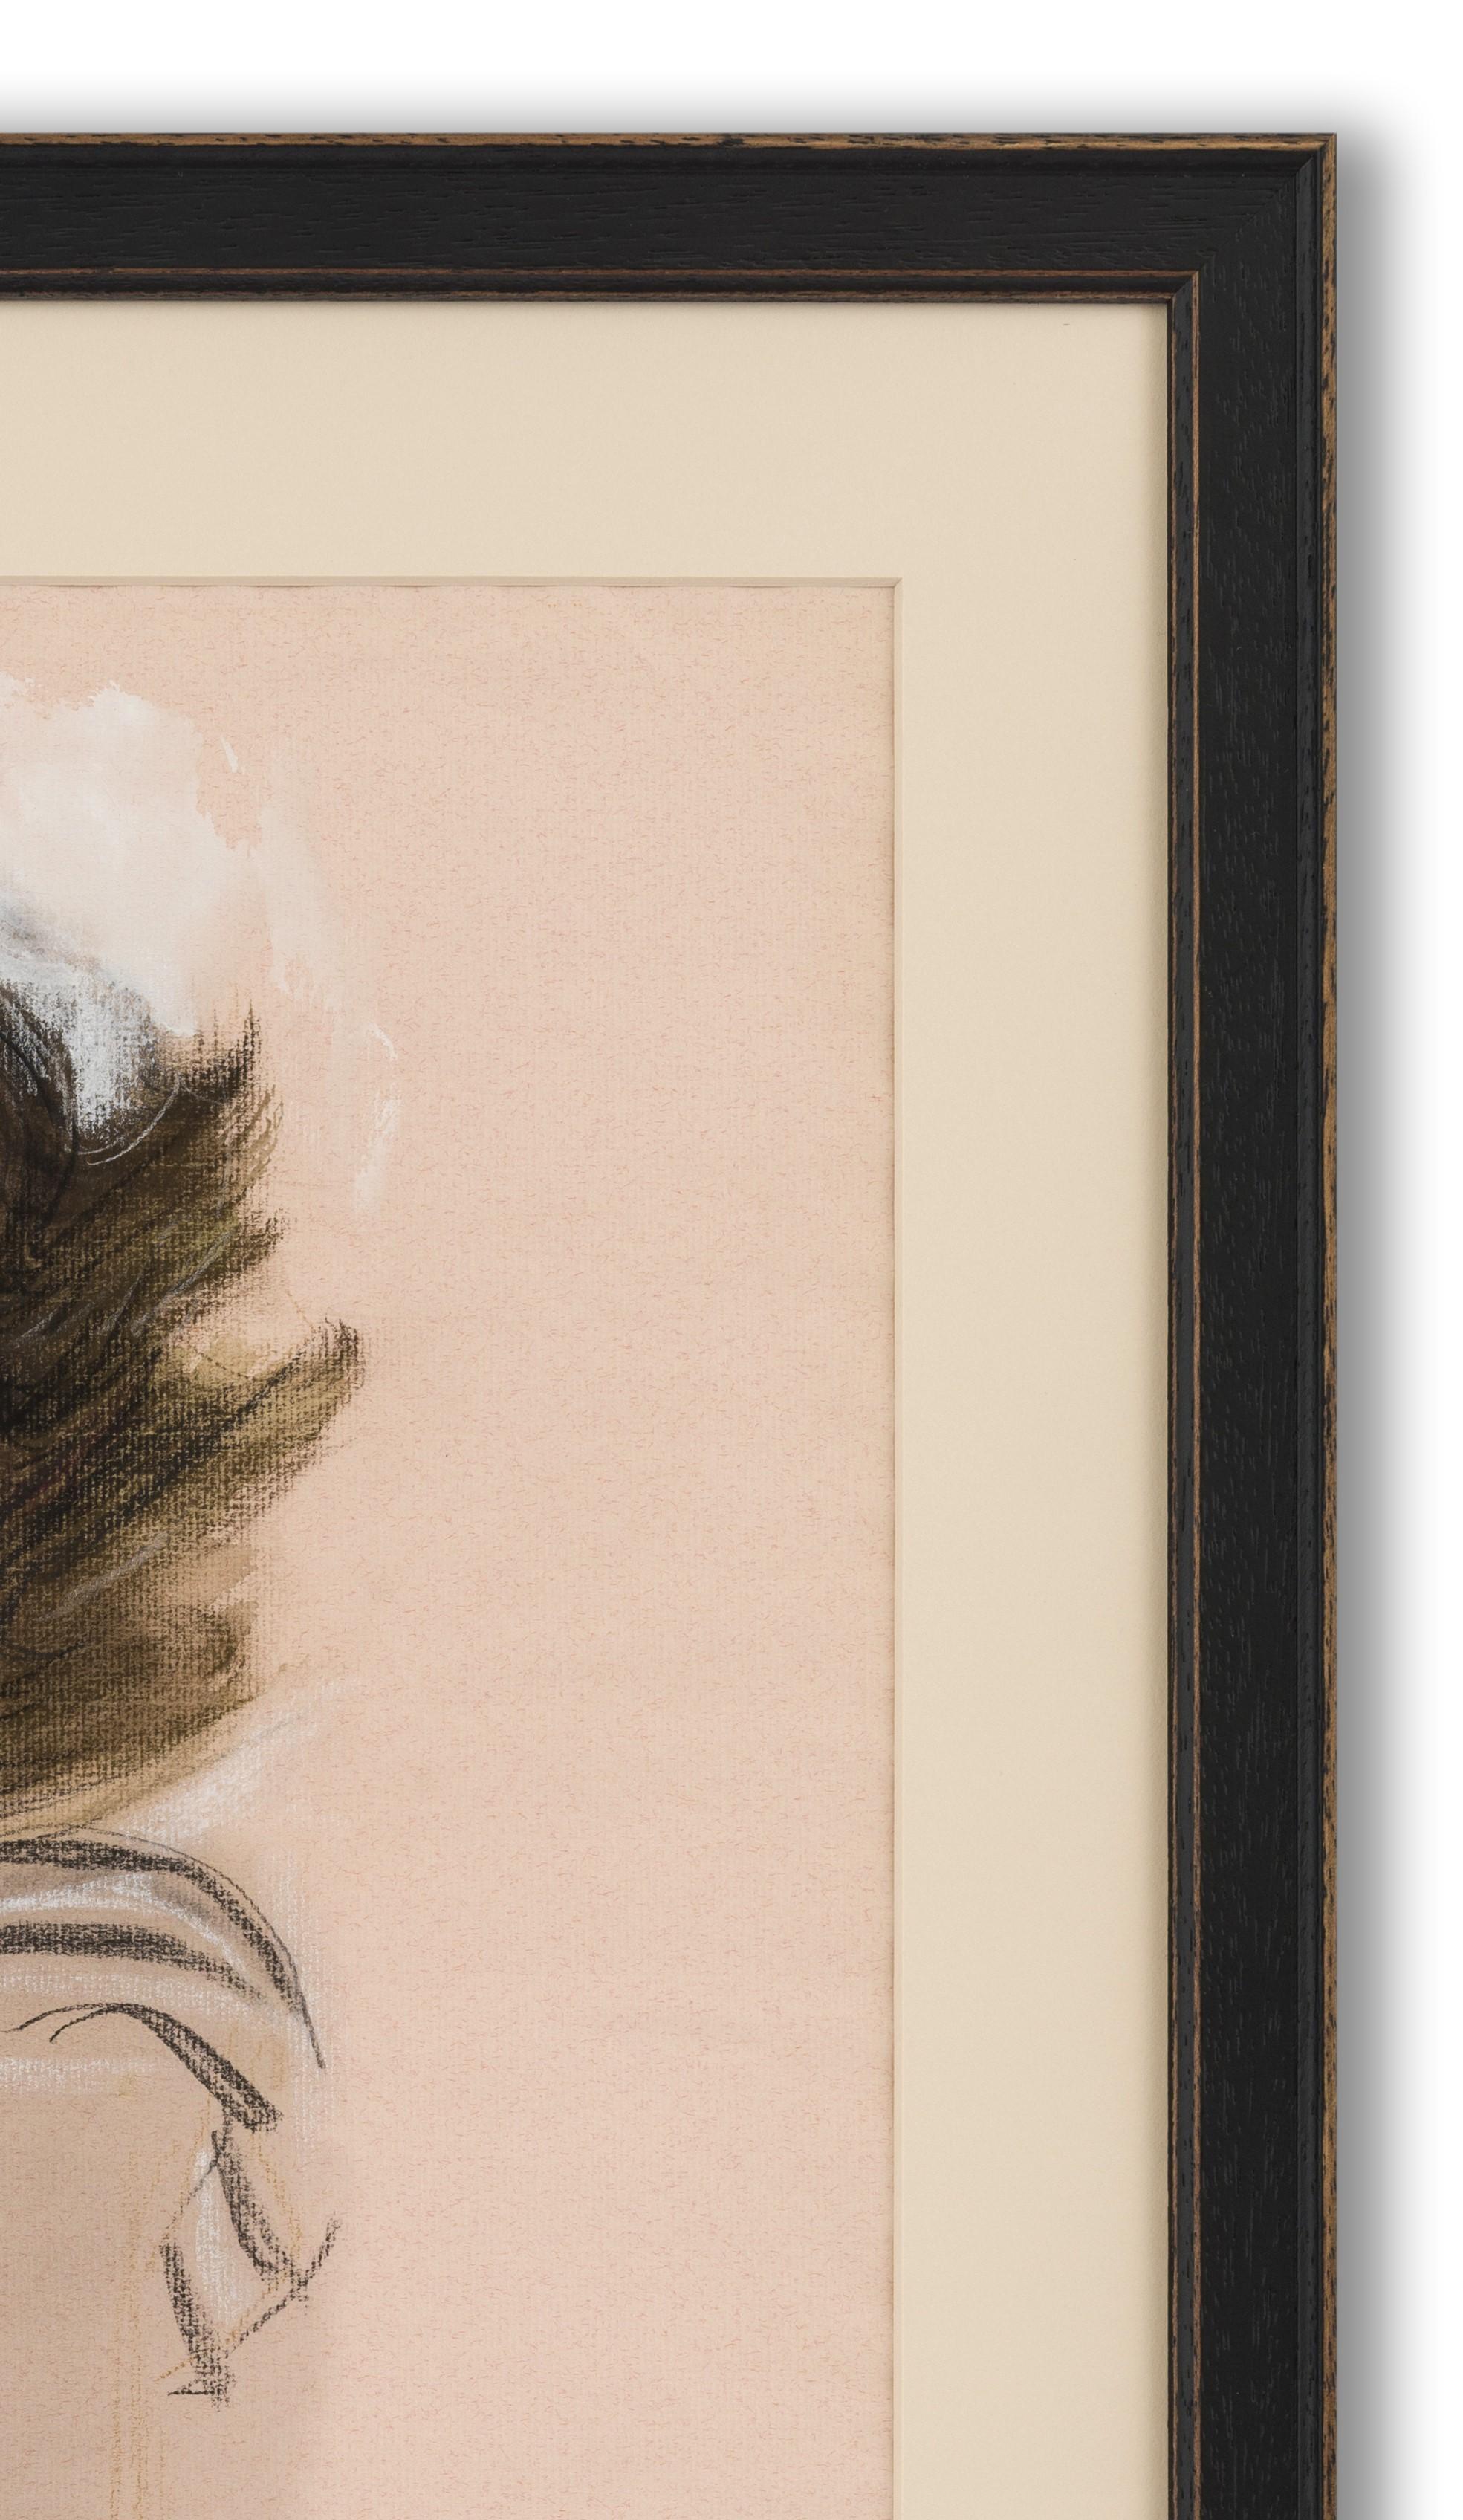 Pastell, Kohle, Aquarell und Gouache auf Papier, 62cm x 48cm (77cm x 60cm gerahmt), Provenienz: Nachlass des Künstlers.  

Stonehouse hatte ein außergewöhnliches Leben. Als junger Kunststudent, der Modeillustration studierte, trat er zu Beginn des